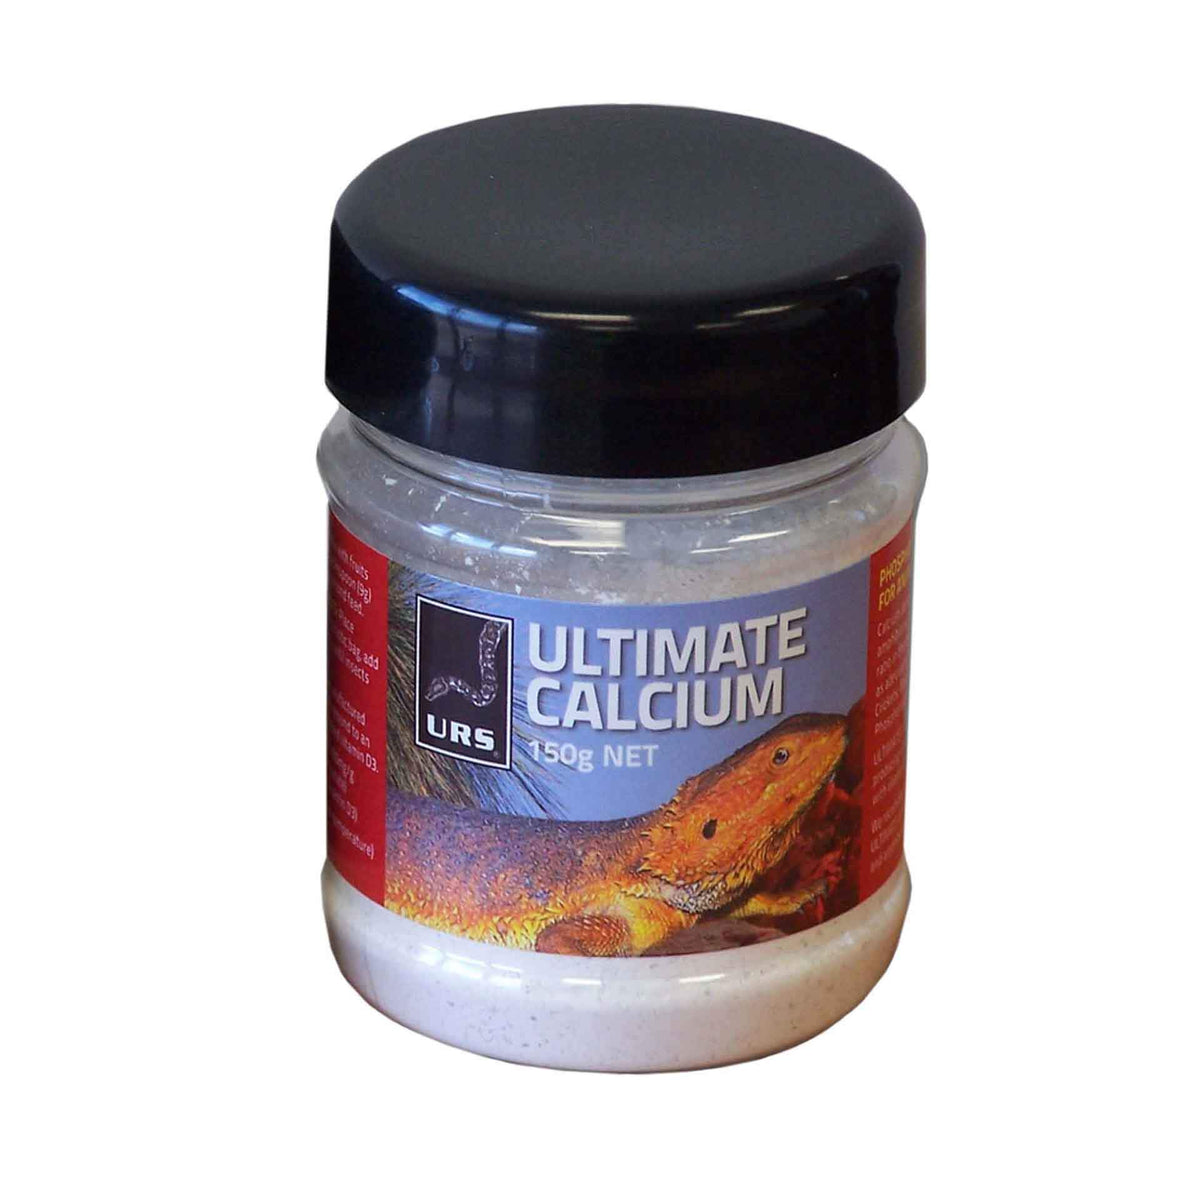 Ultimate Calcium - 150g Phosphorus Free